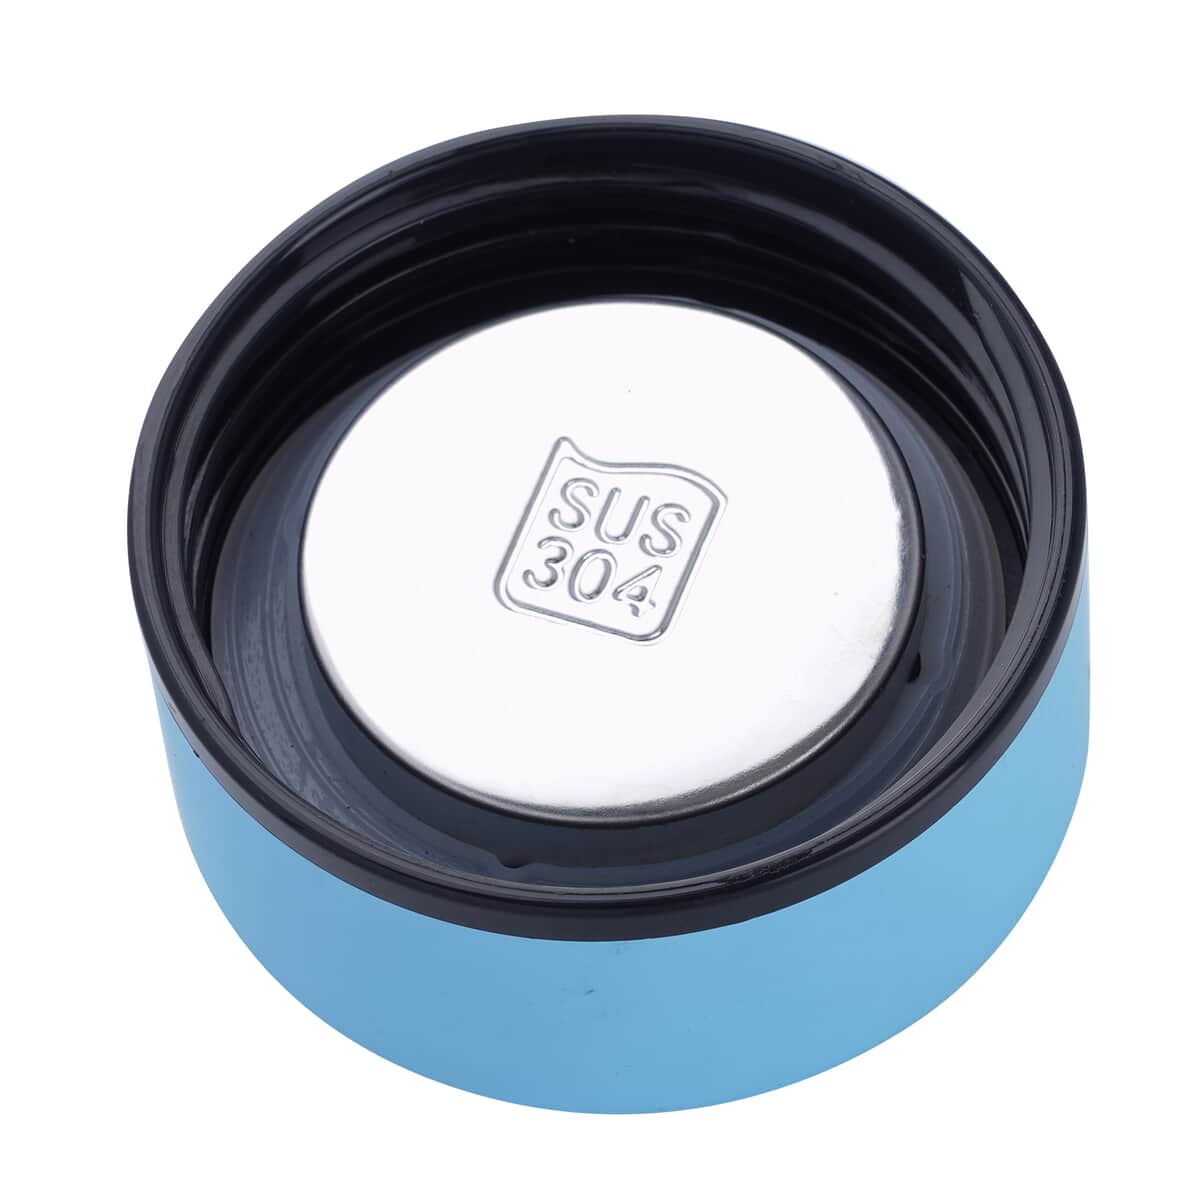 Elite Shungite Filter Infuser and Temperature Sensor Smart Water Bottle (LED Display, Long Filter) - Black image number 1